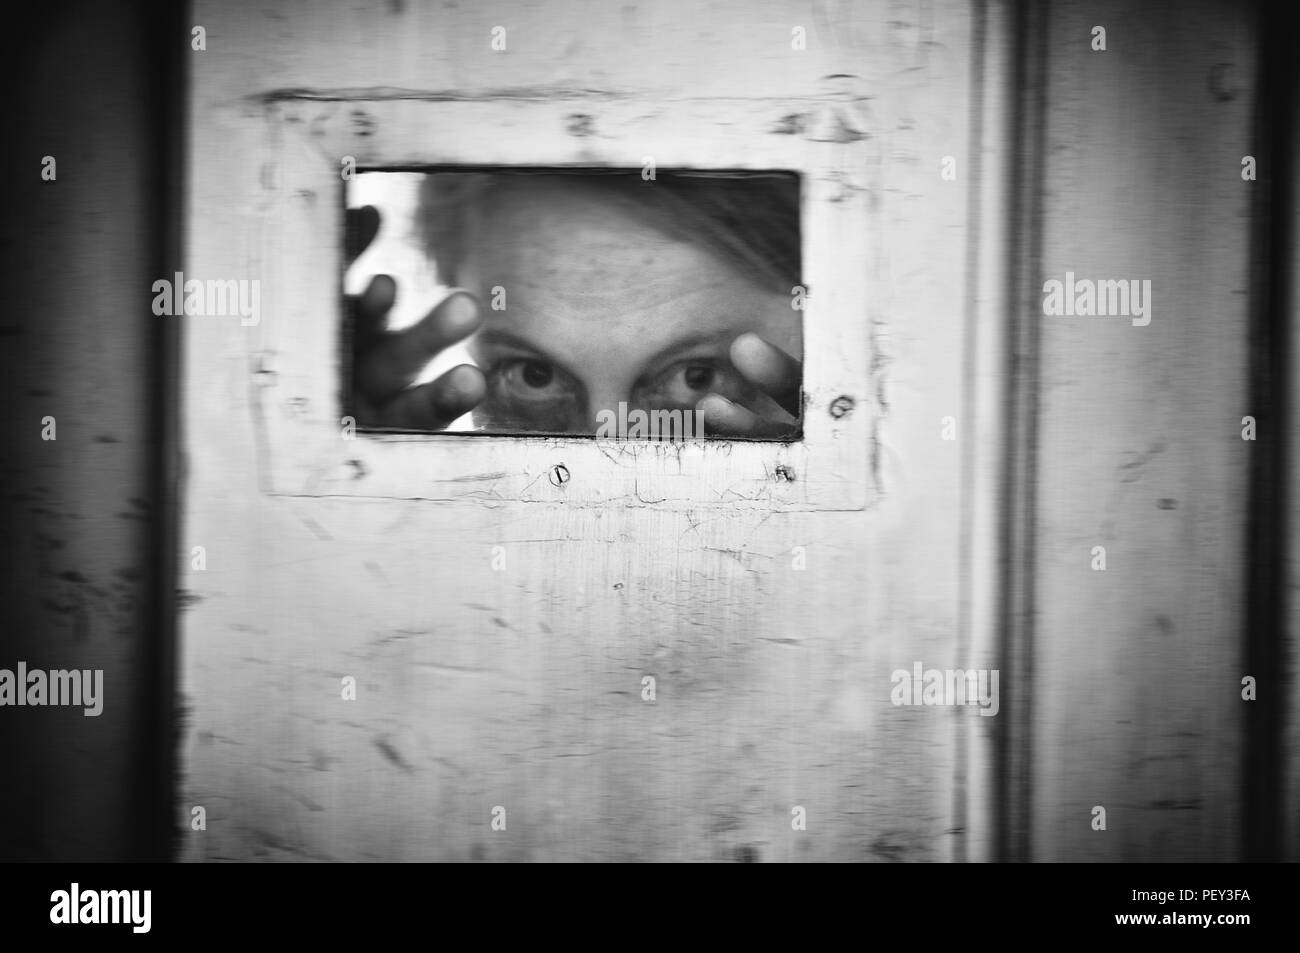 Immagine in bianco e nero di donna pazzesca al vecchio ospedale mentale. Foto Stock